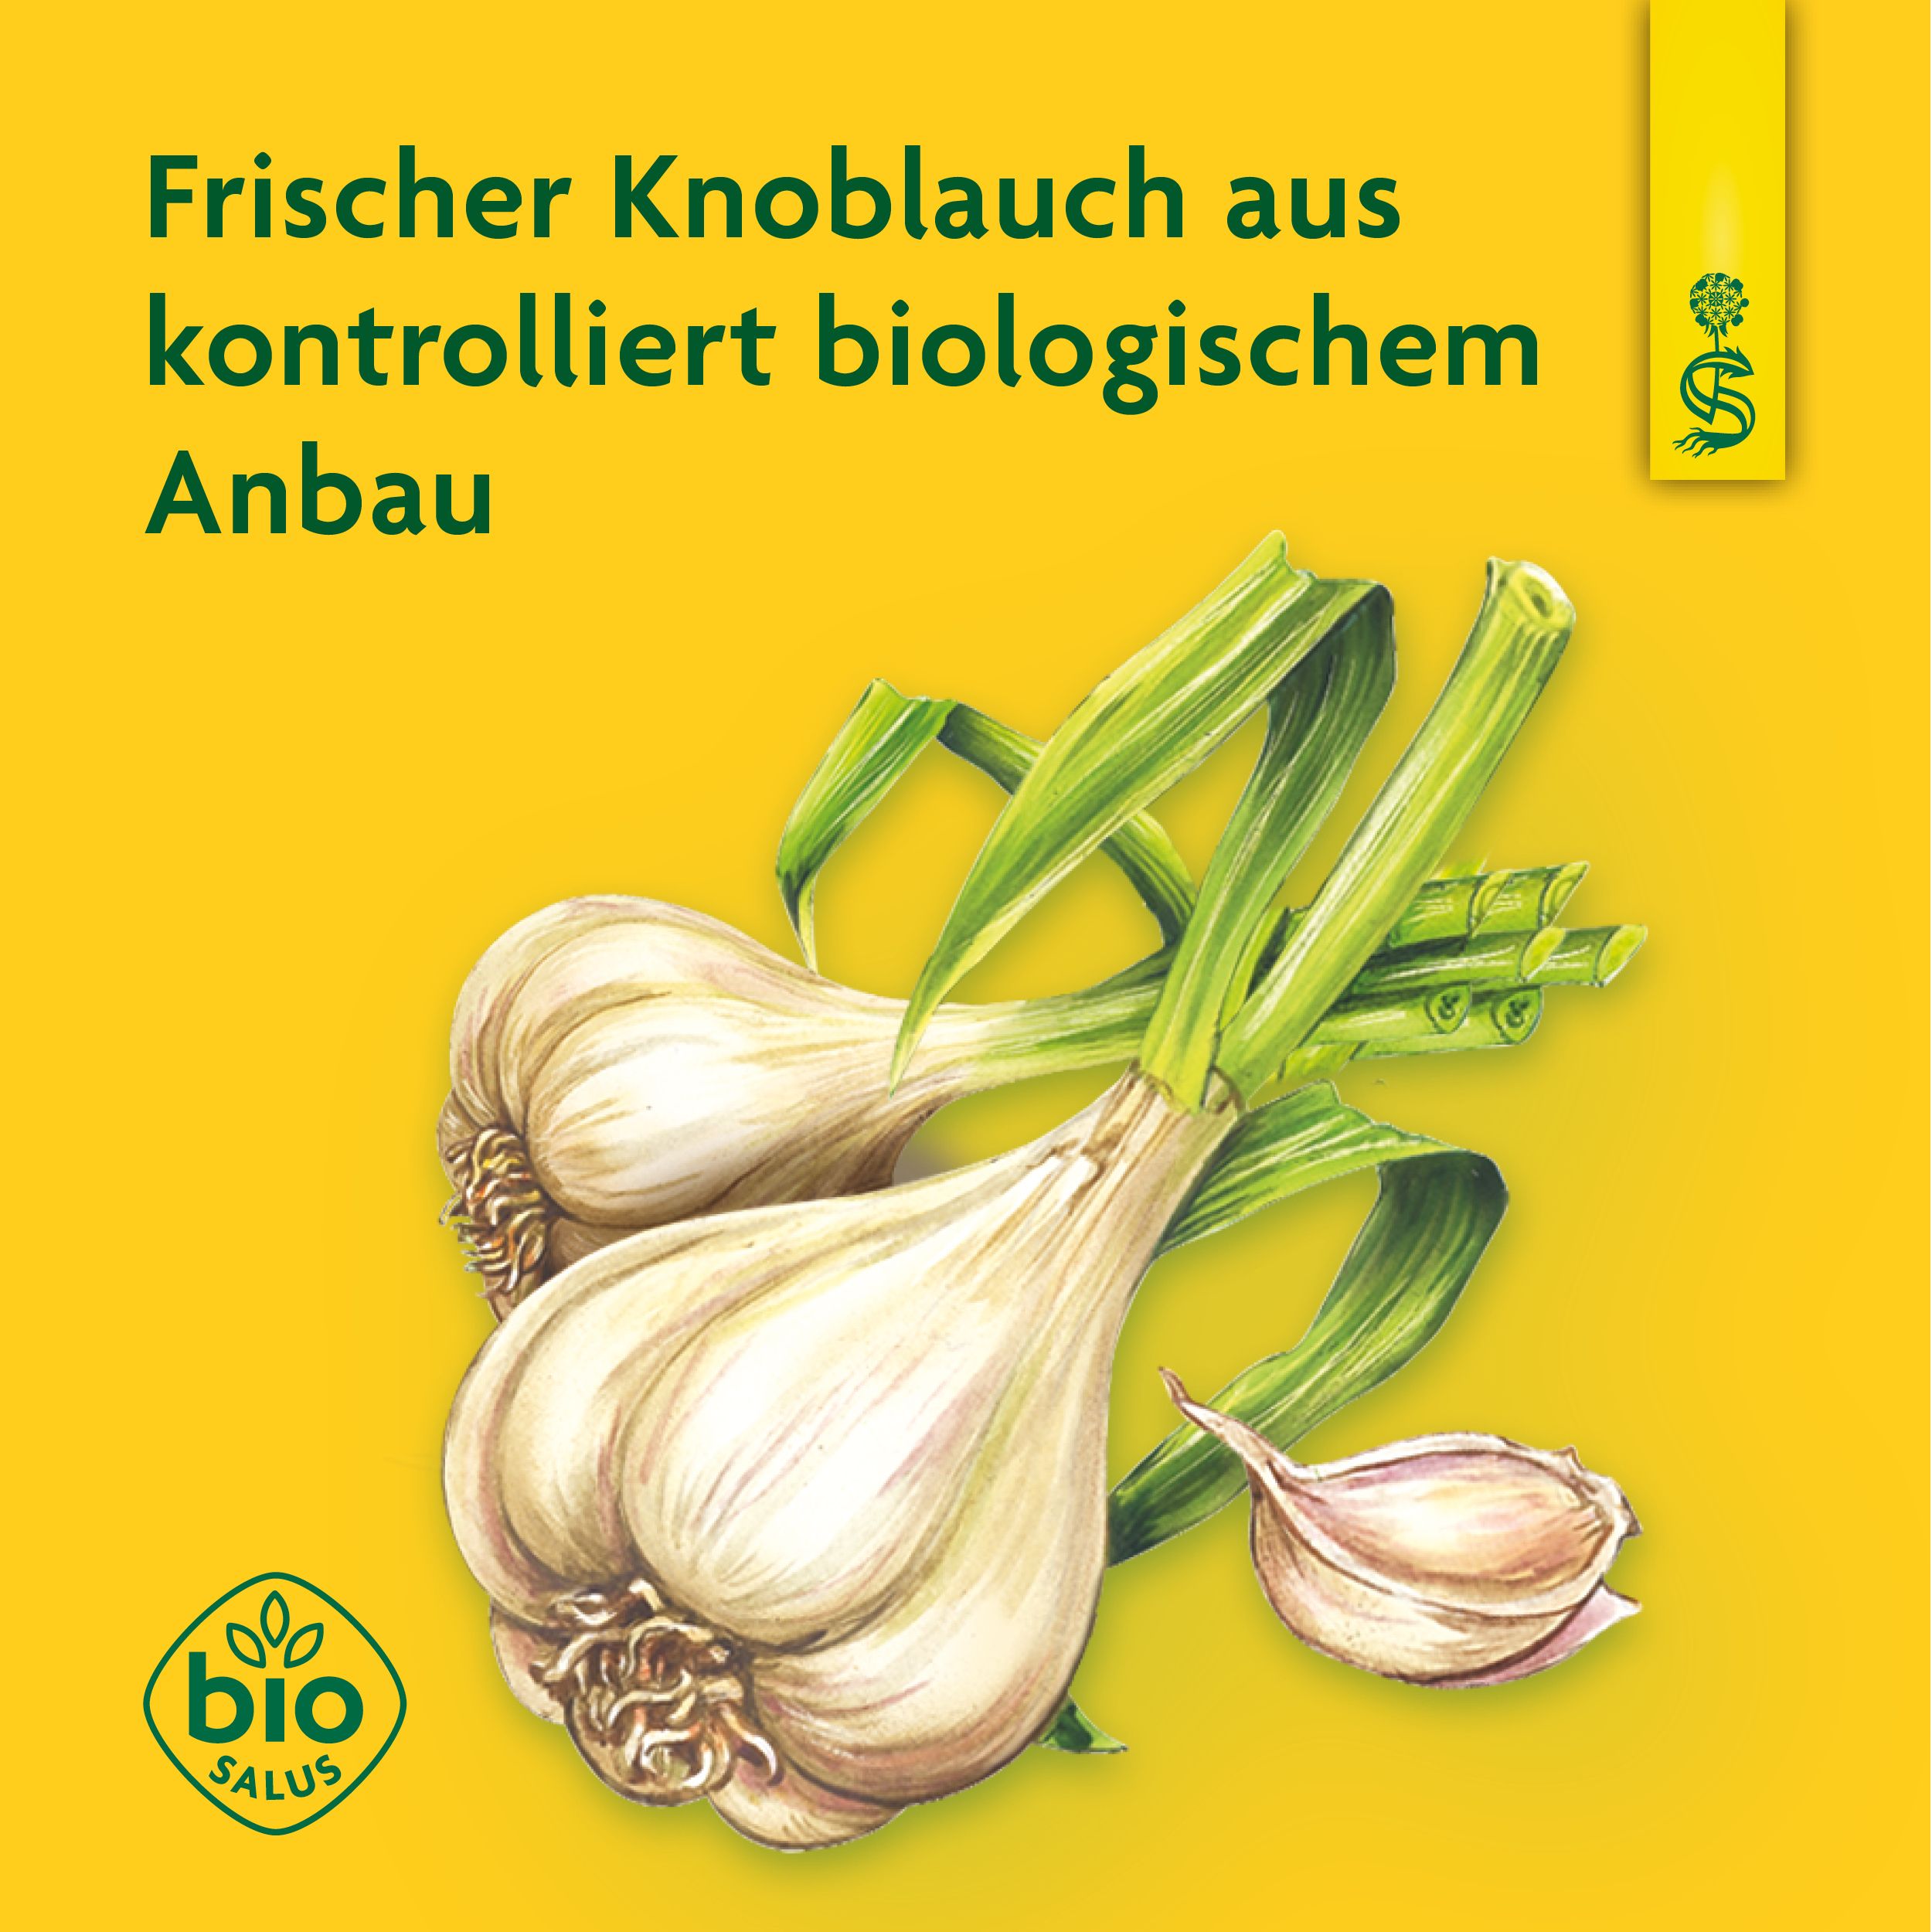 Schoenenberger® naturreiner Pflanzentrunk Knoblauch